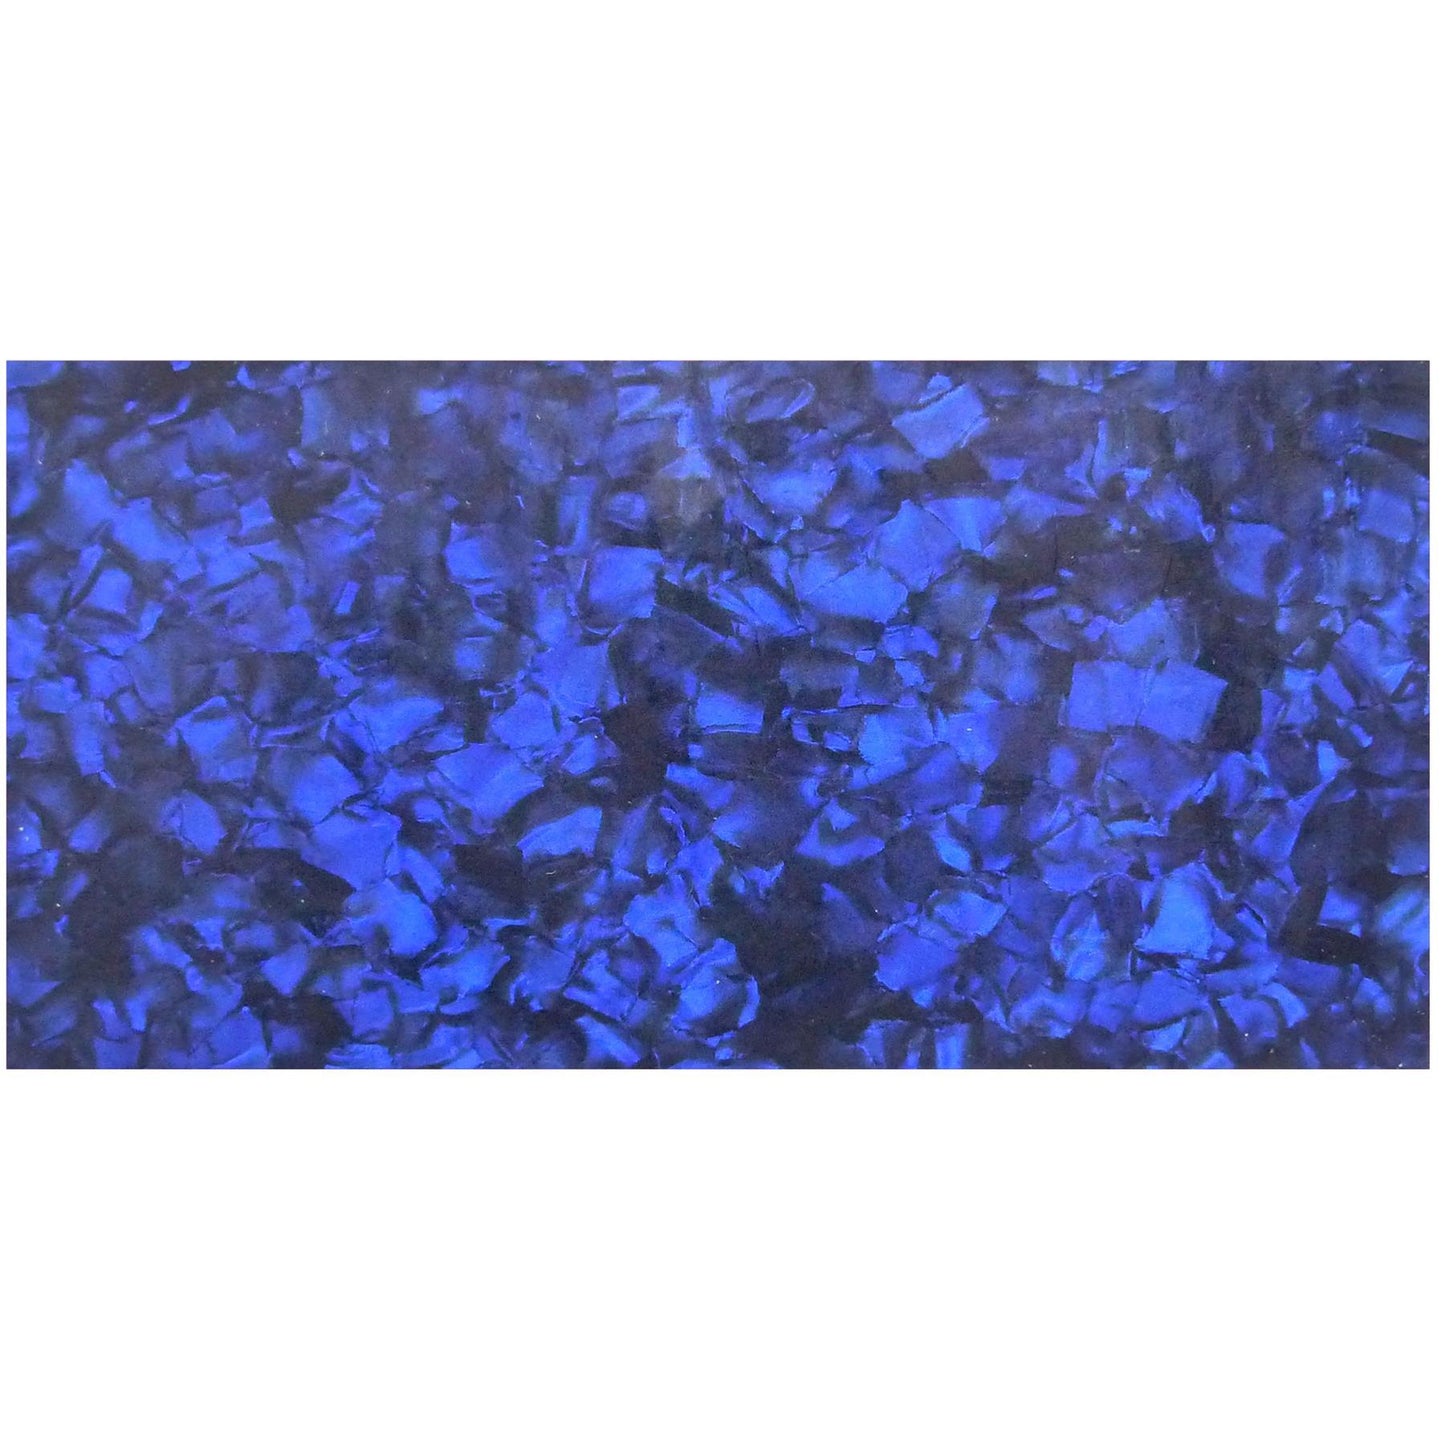 Incudo Blue Pearloid Celluloid Sheet - 200x100x0.96mm (7.9x3.94x0.04")